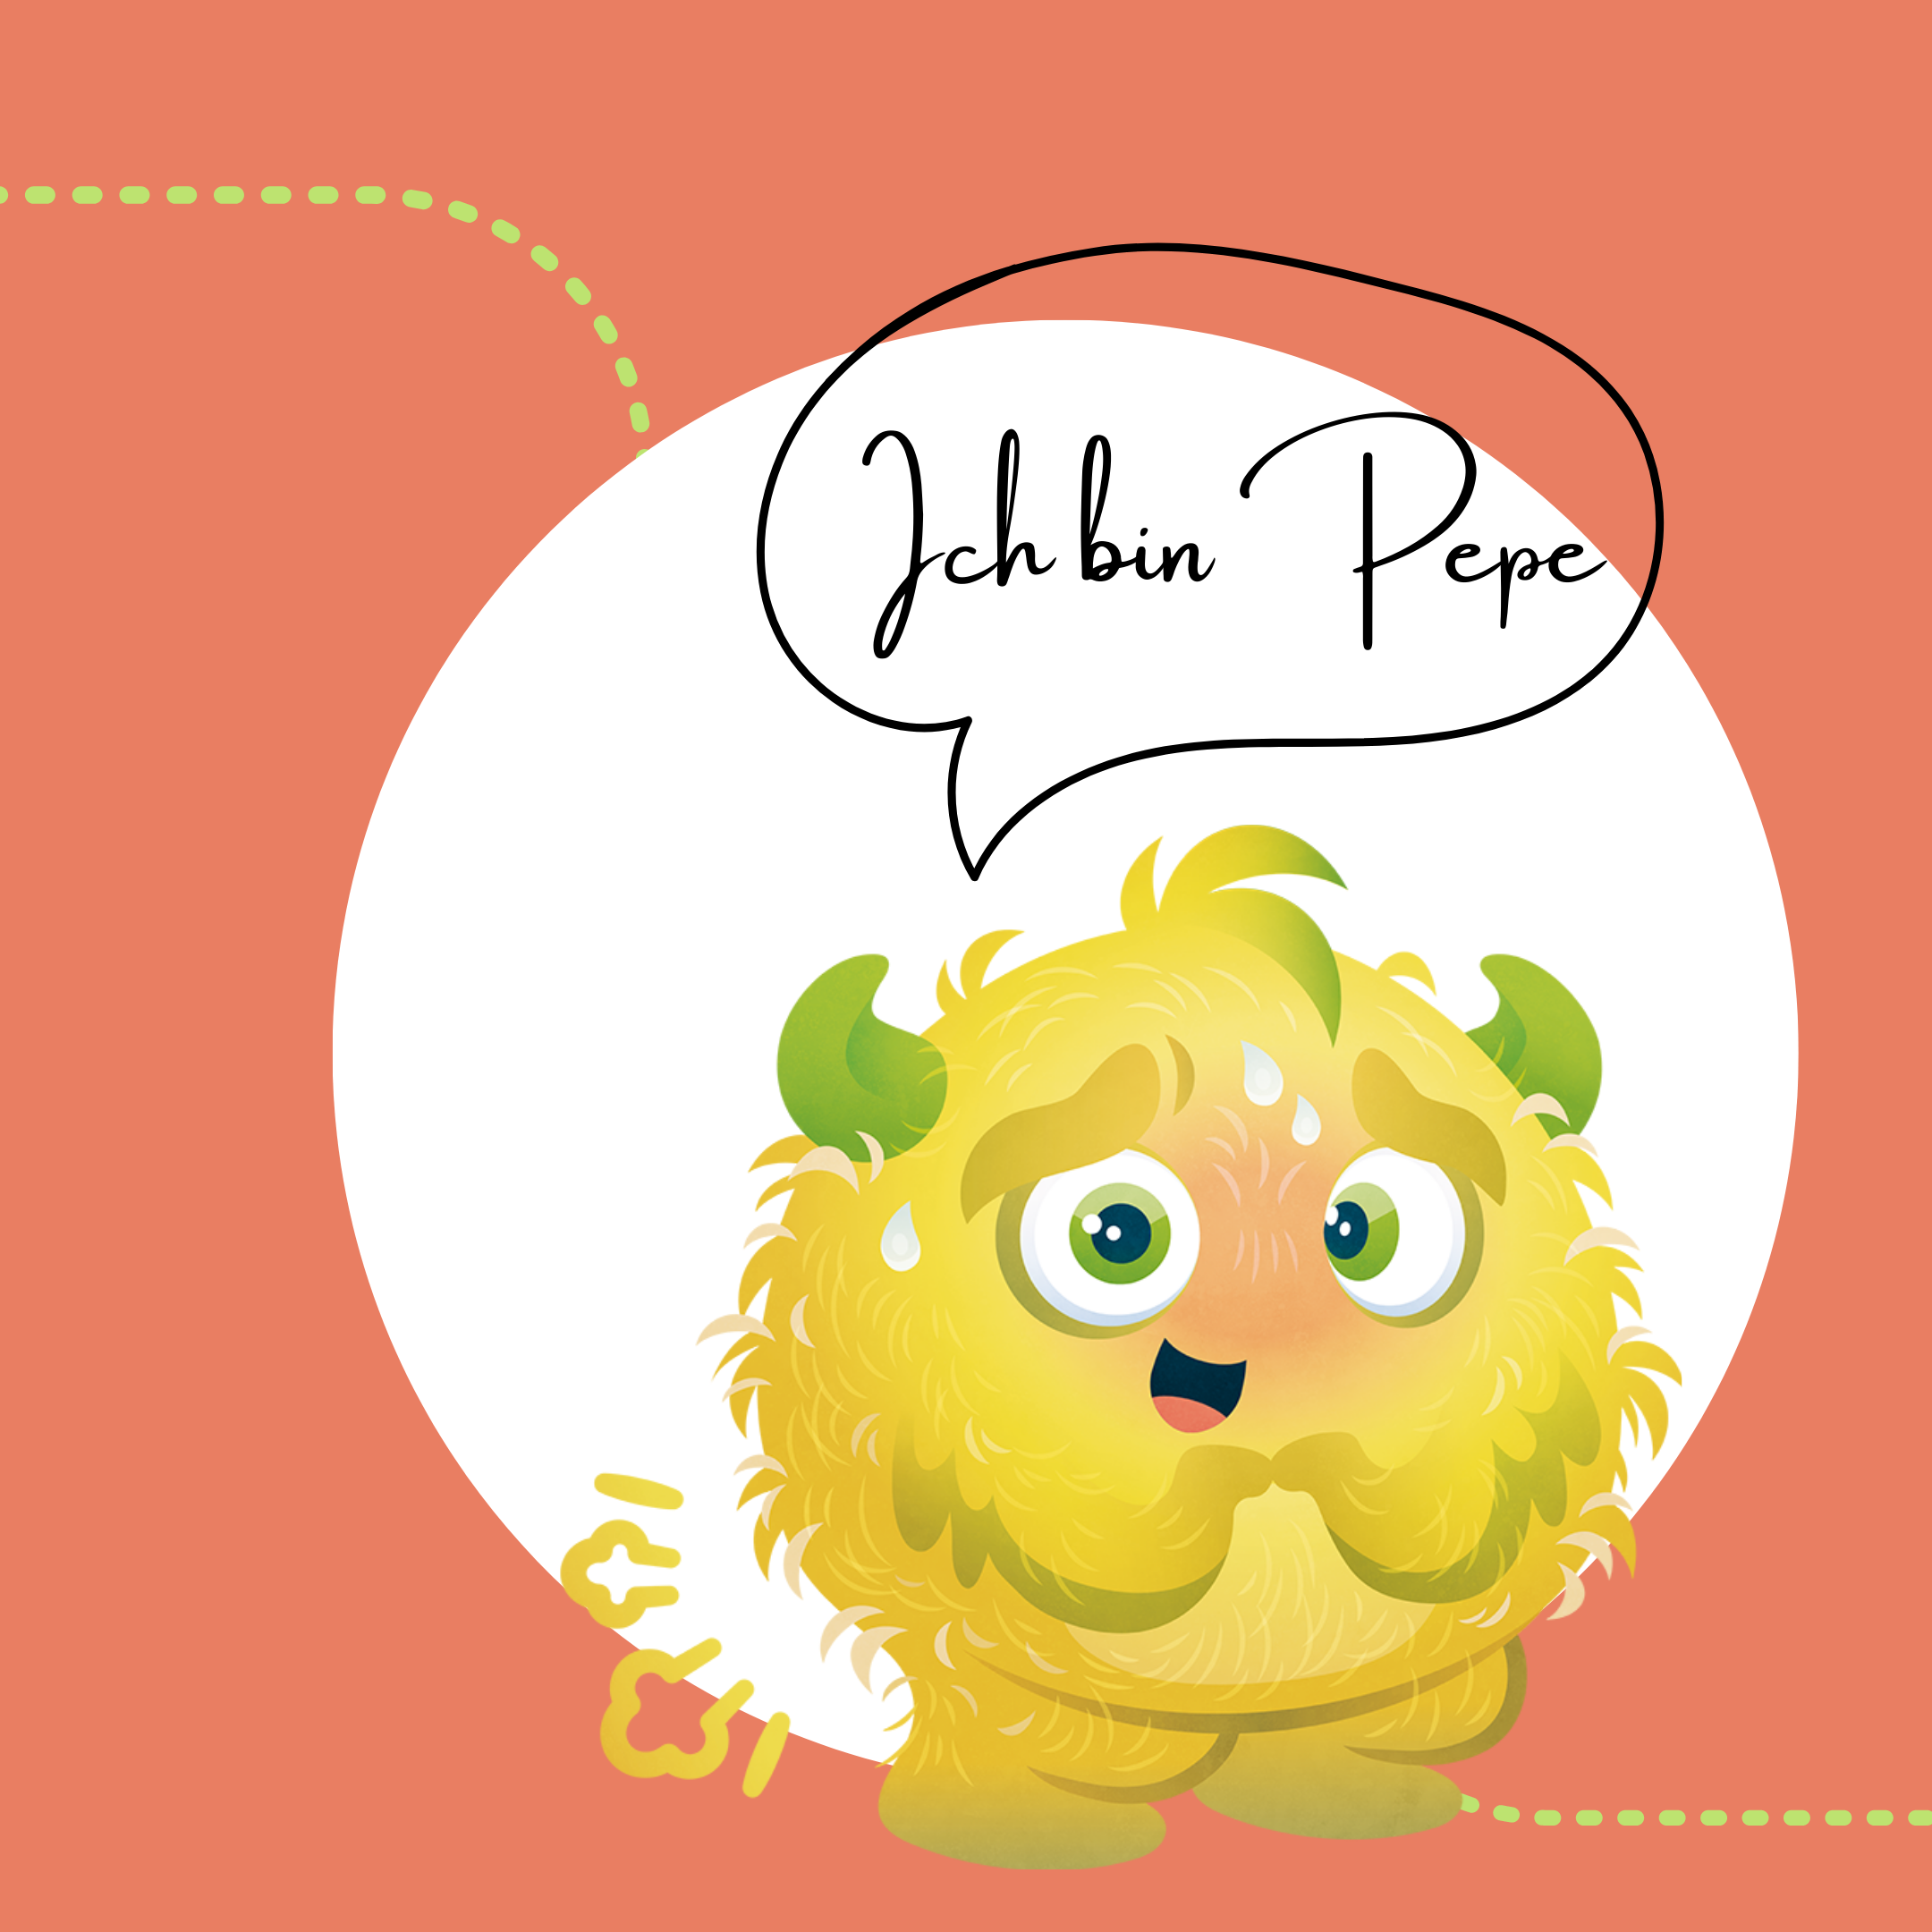 Monster Pepe - bei Bauchweh und Blähungen von Kindern als Verdauungshilfe - Instagram Beitrag